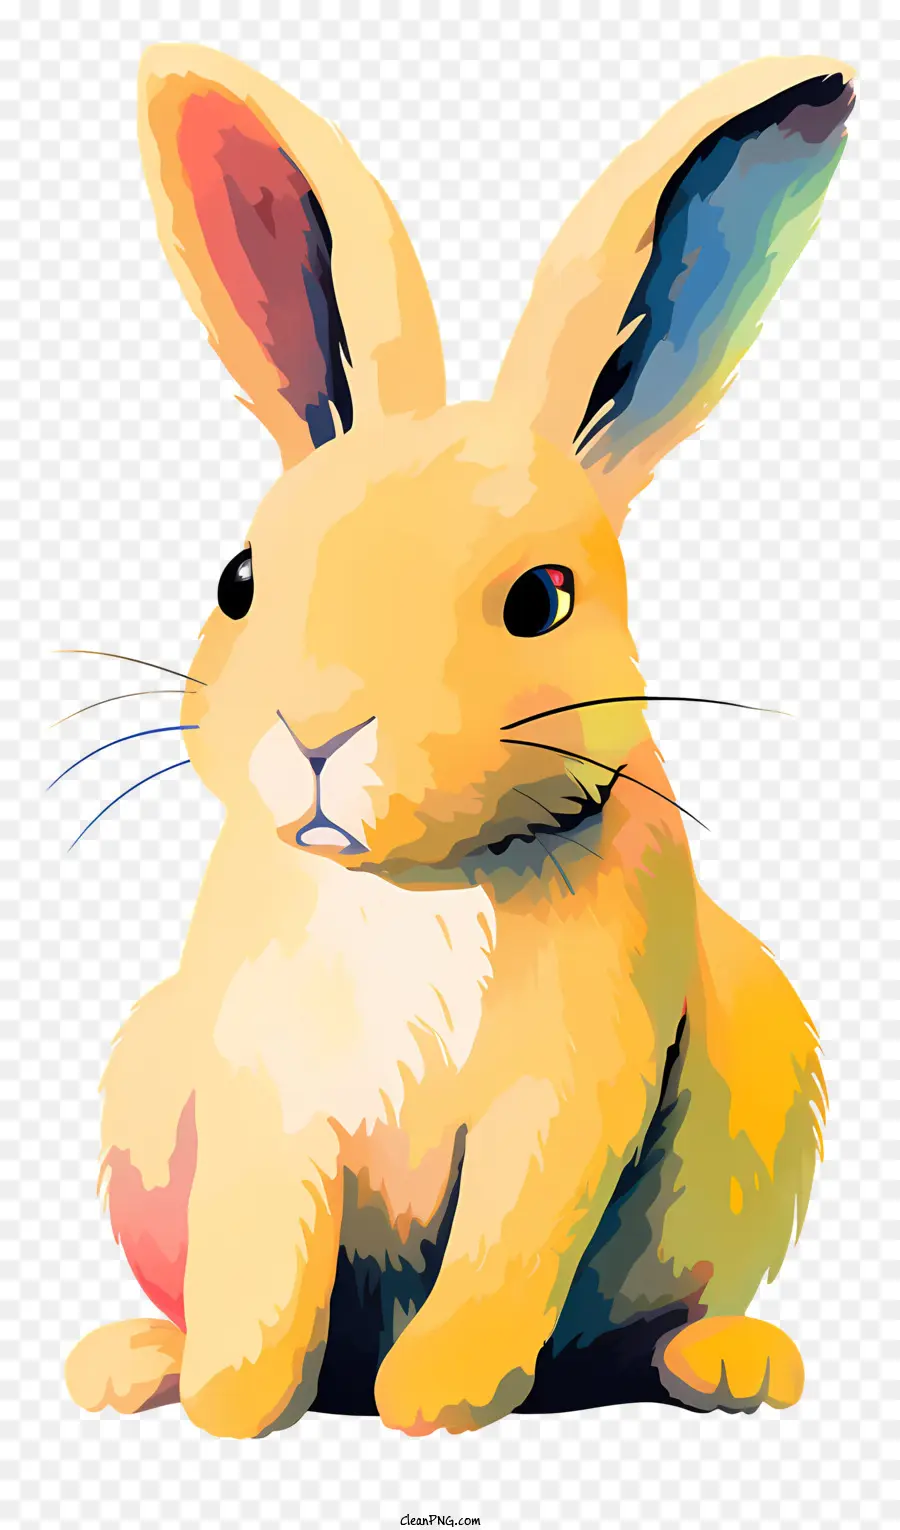 Bunny màu vàng đuôi dài đôi mắt sáng ngồi thỏ gập chân - Chú thỏ màu vàng với đôi mắt sáng đeo cổ áo